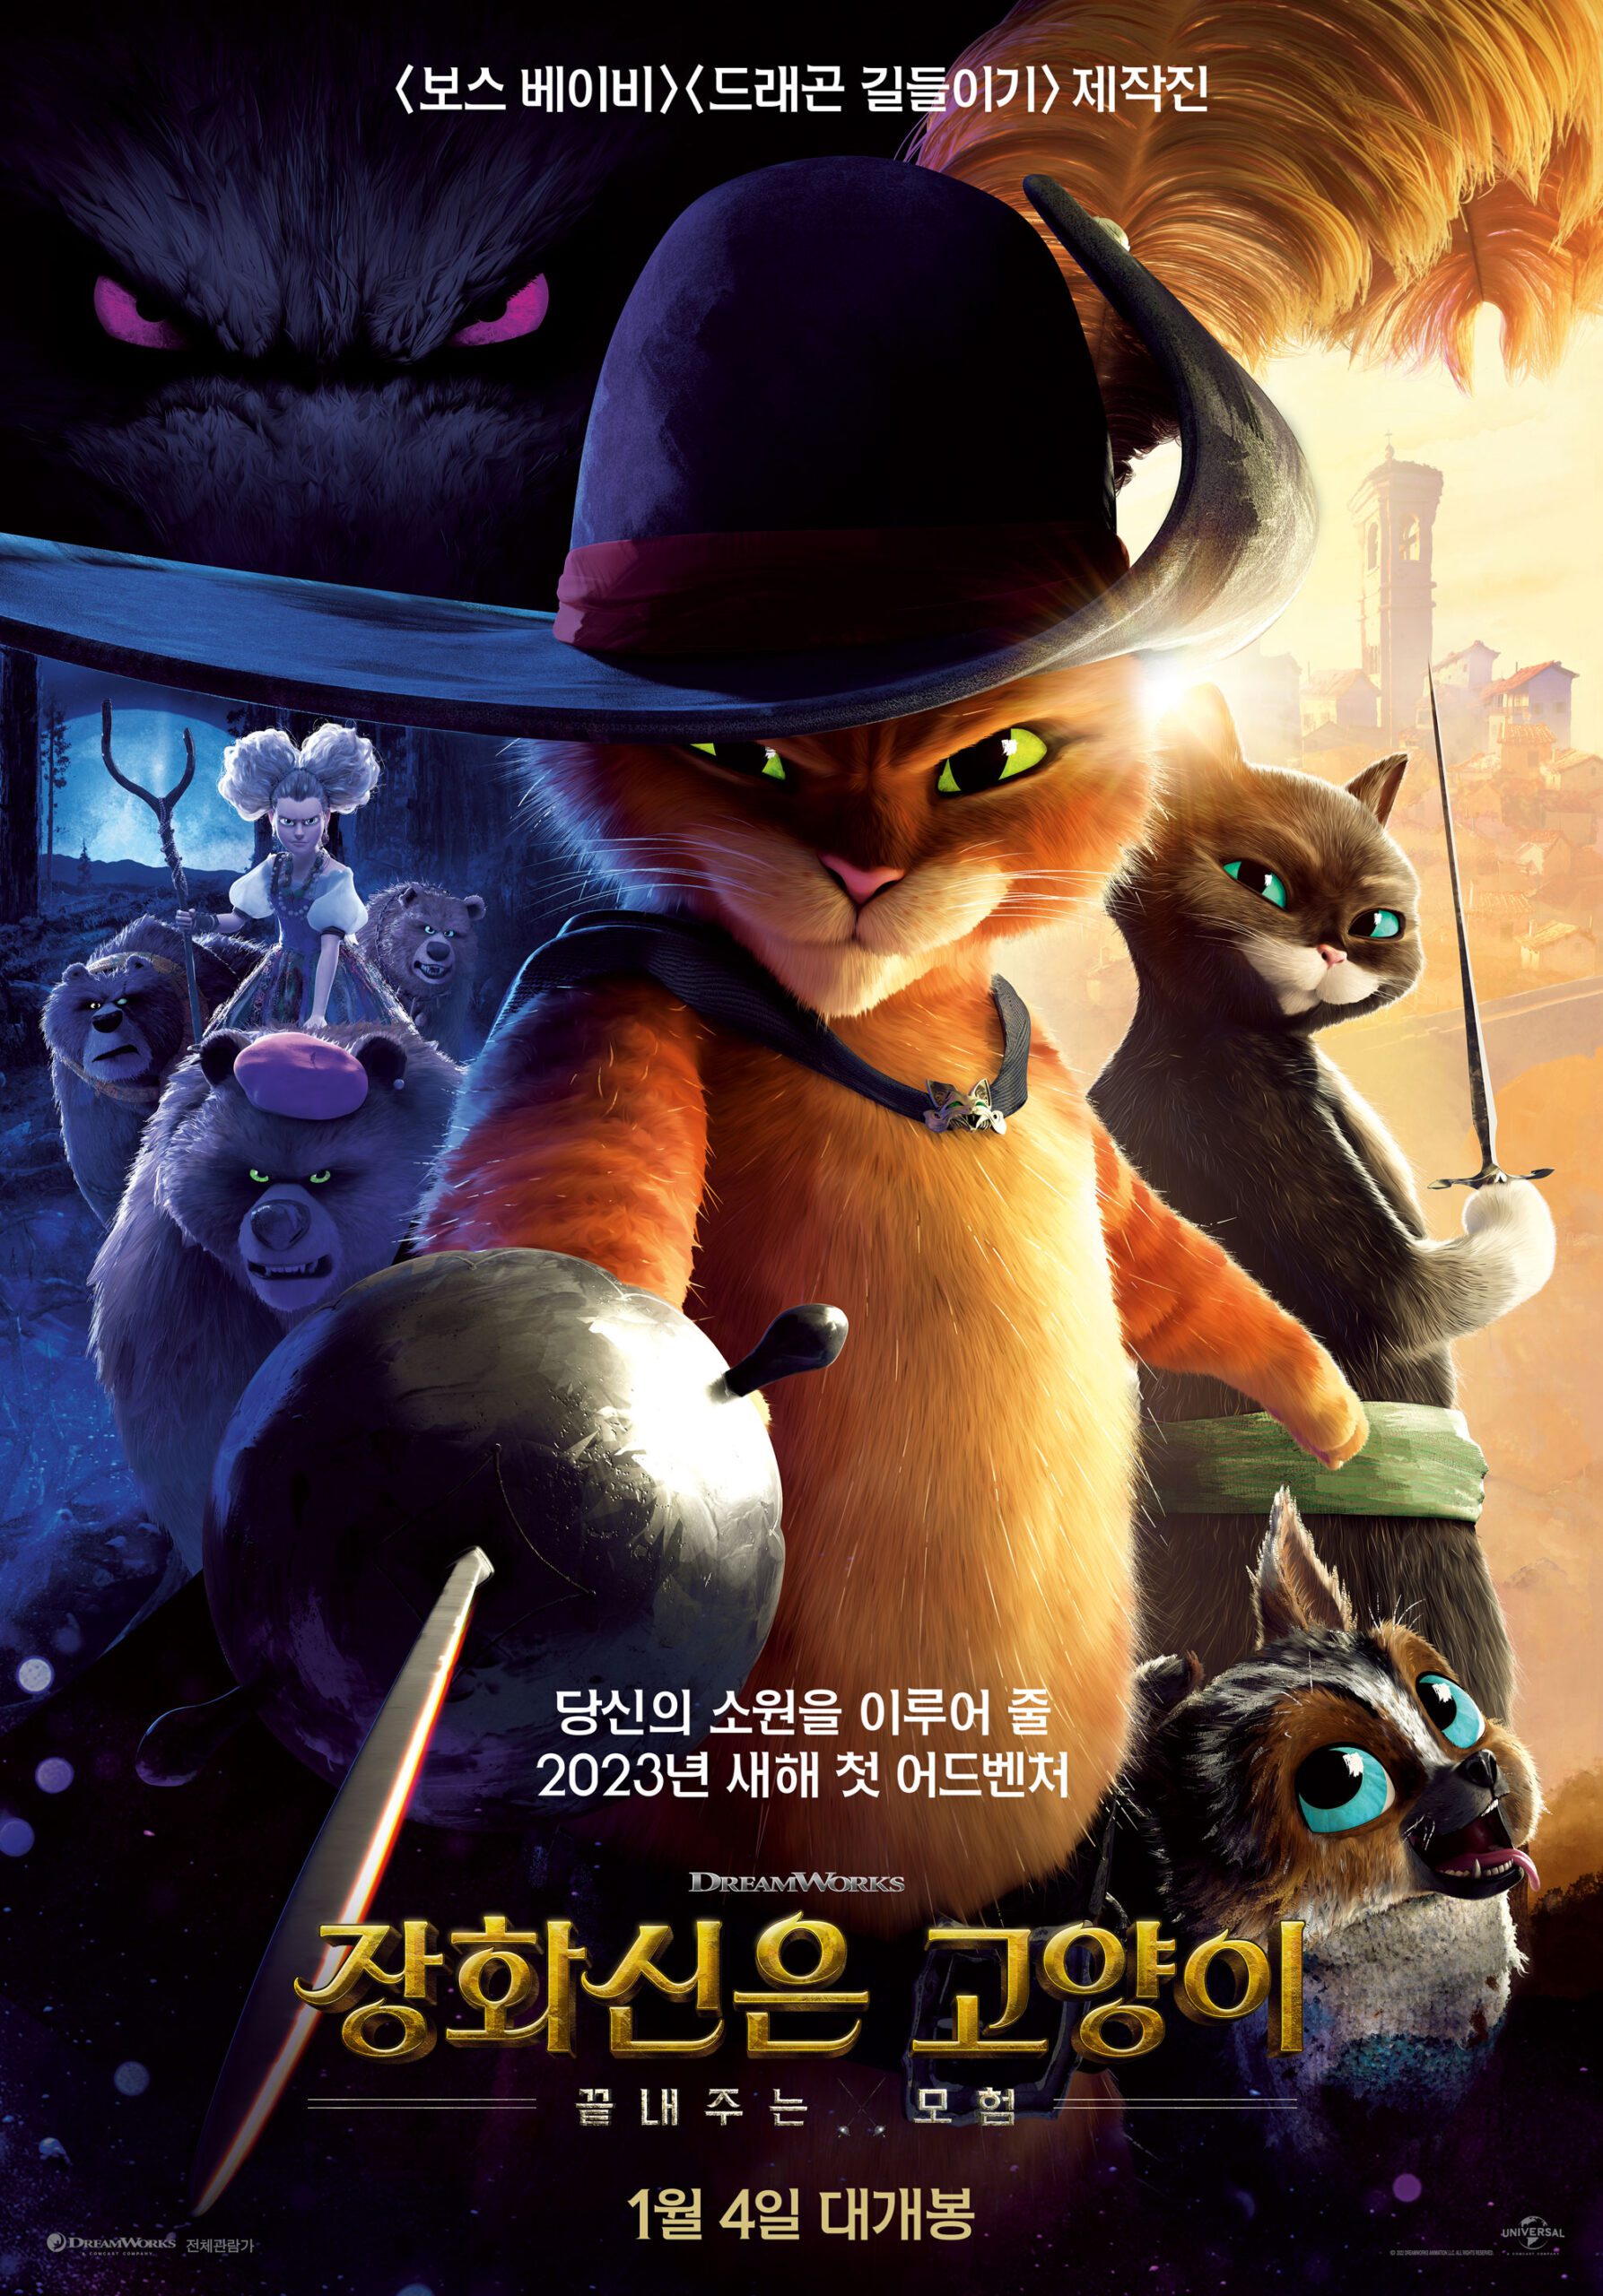 애니메이션장르 영화 “장화신은 고양이: 끝내주는 모험” 개봉소식